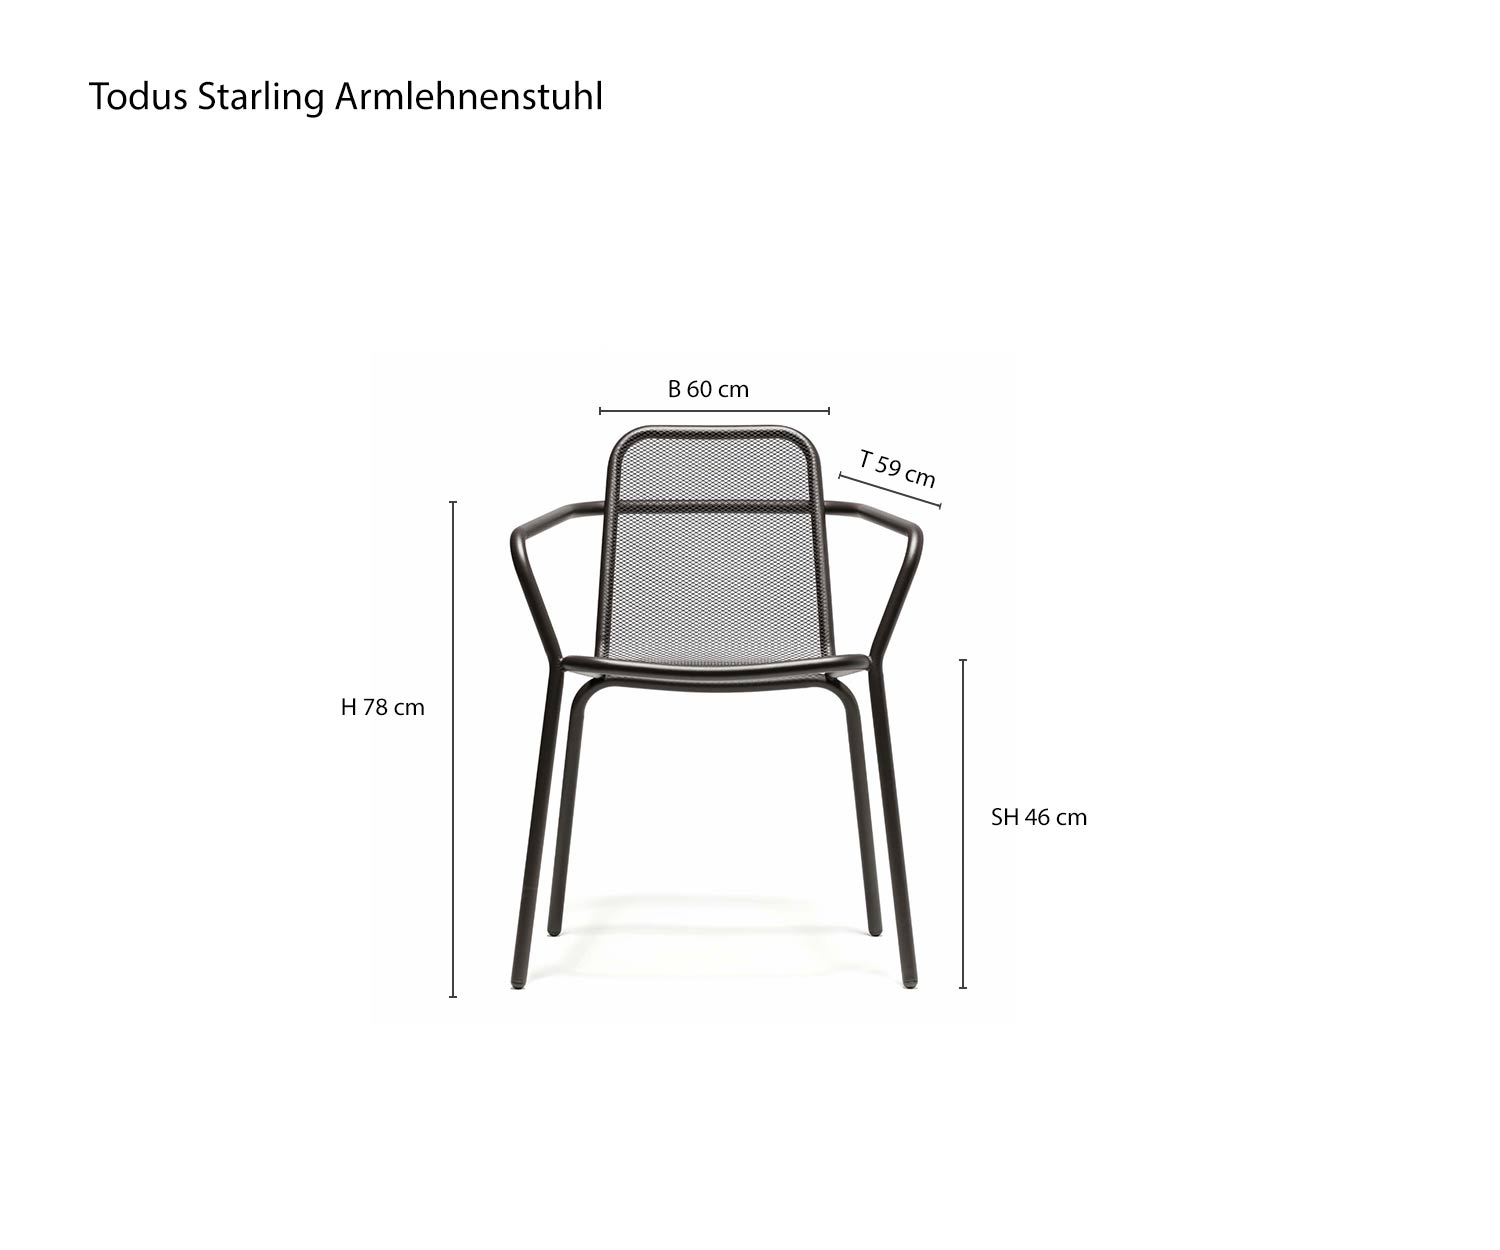 Maße Todus Starling Designer Armlehnstuhl